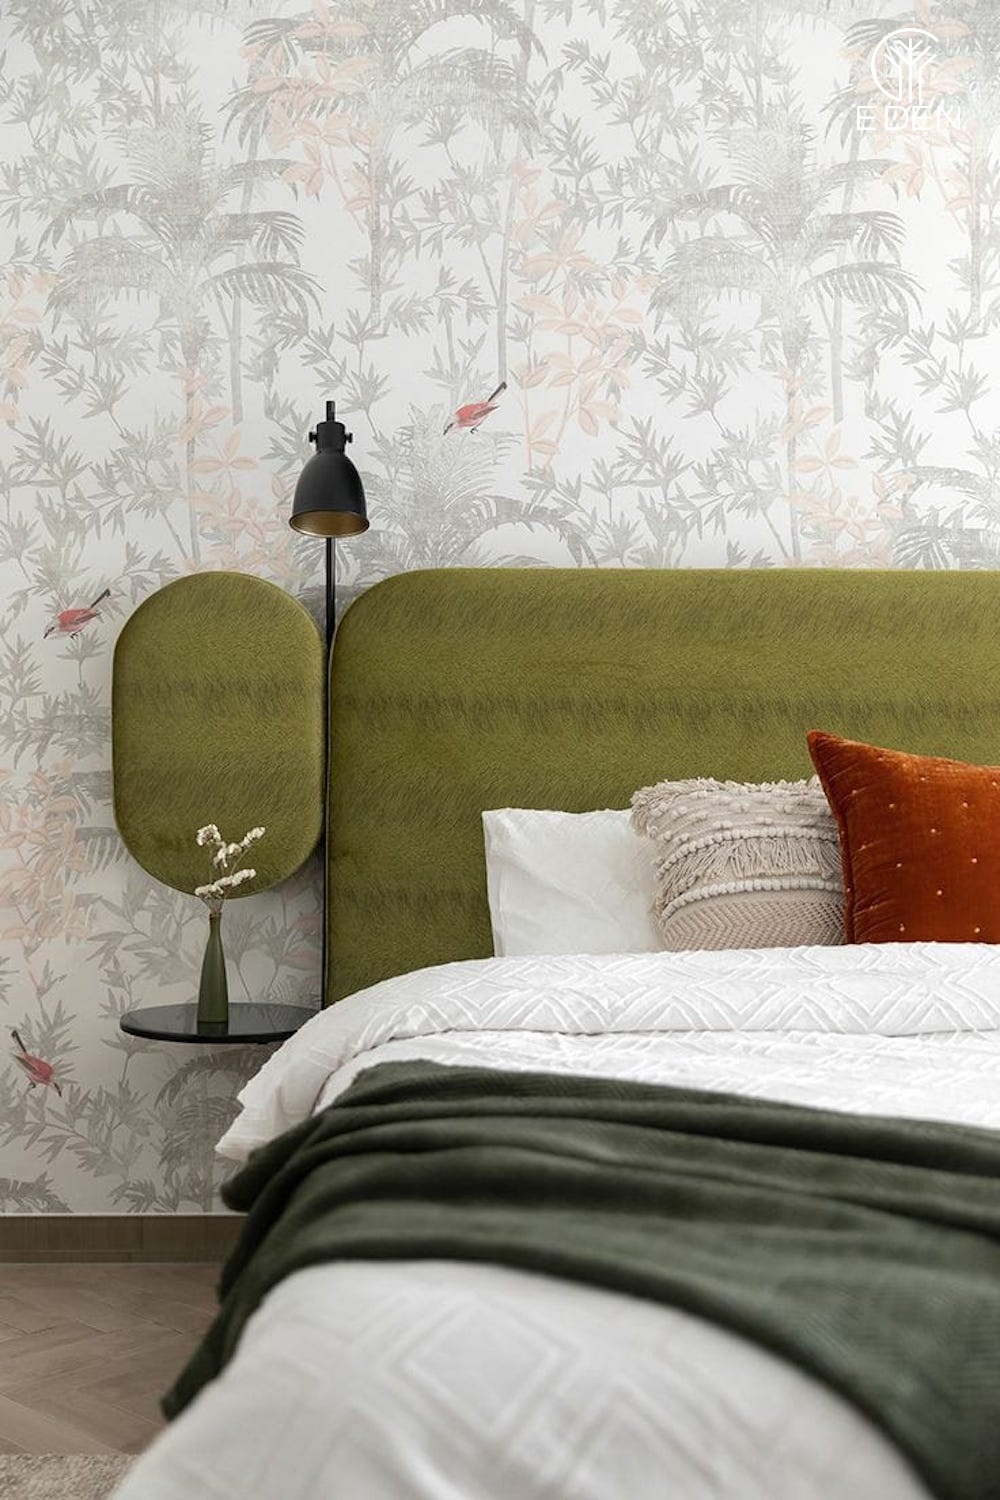 Ý tưởng sử dụng giấy dán tường vân chìm mang vẻ đẹp tươi tắn cho phòng ngủ hiện đại